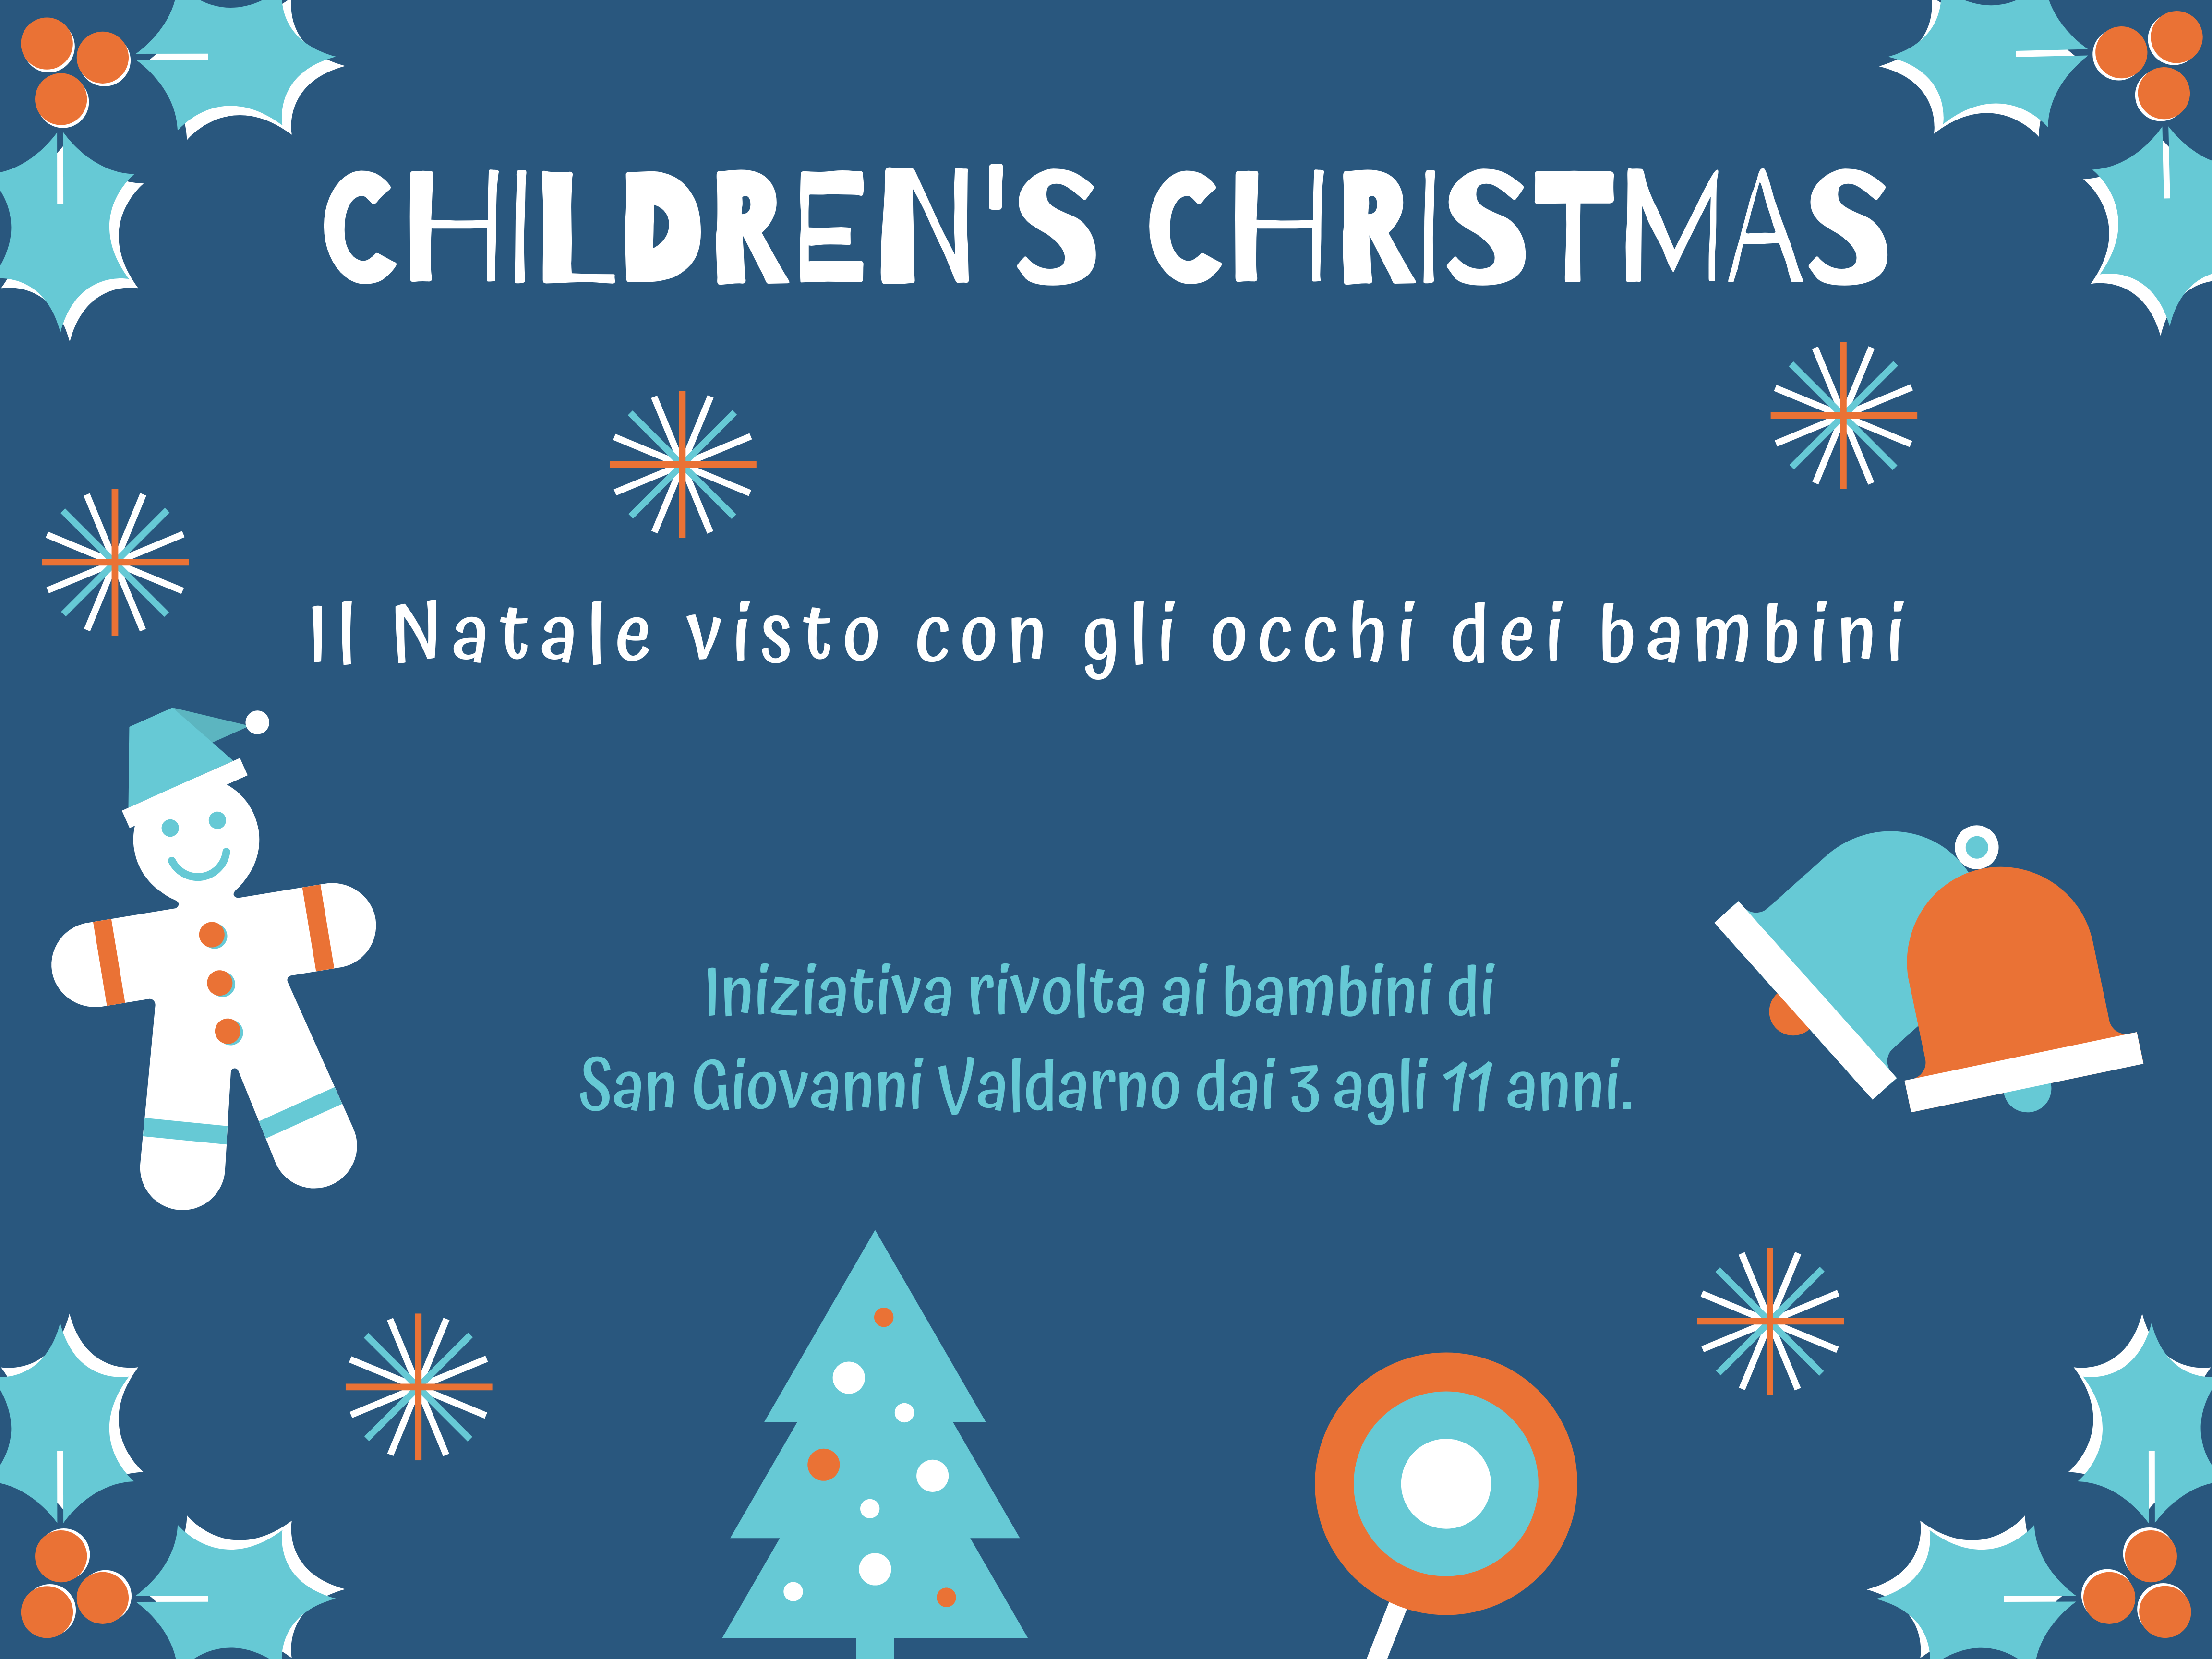 Children’s Christmas – Il Natale visto con gli occhi dei bambini